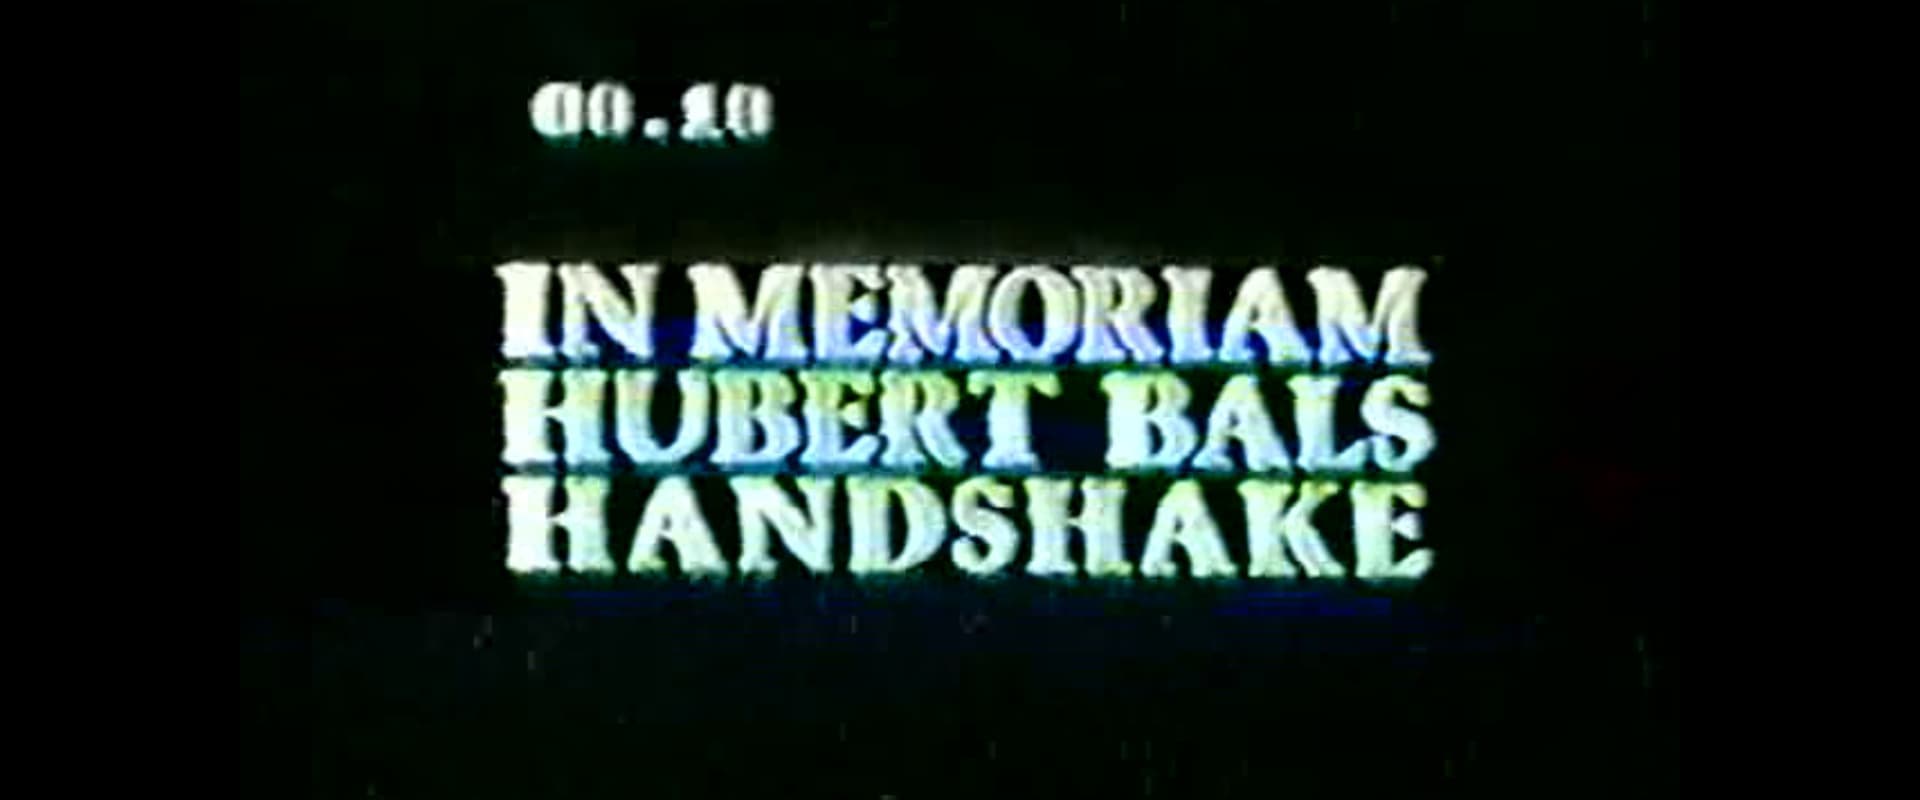 Hubert Bals Handshake